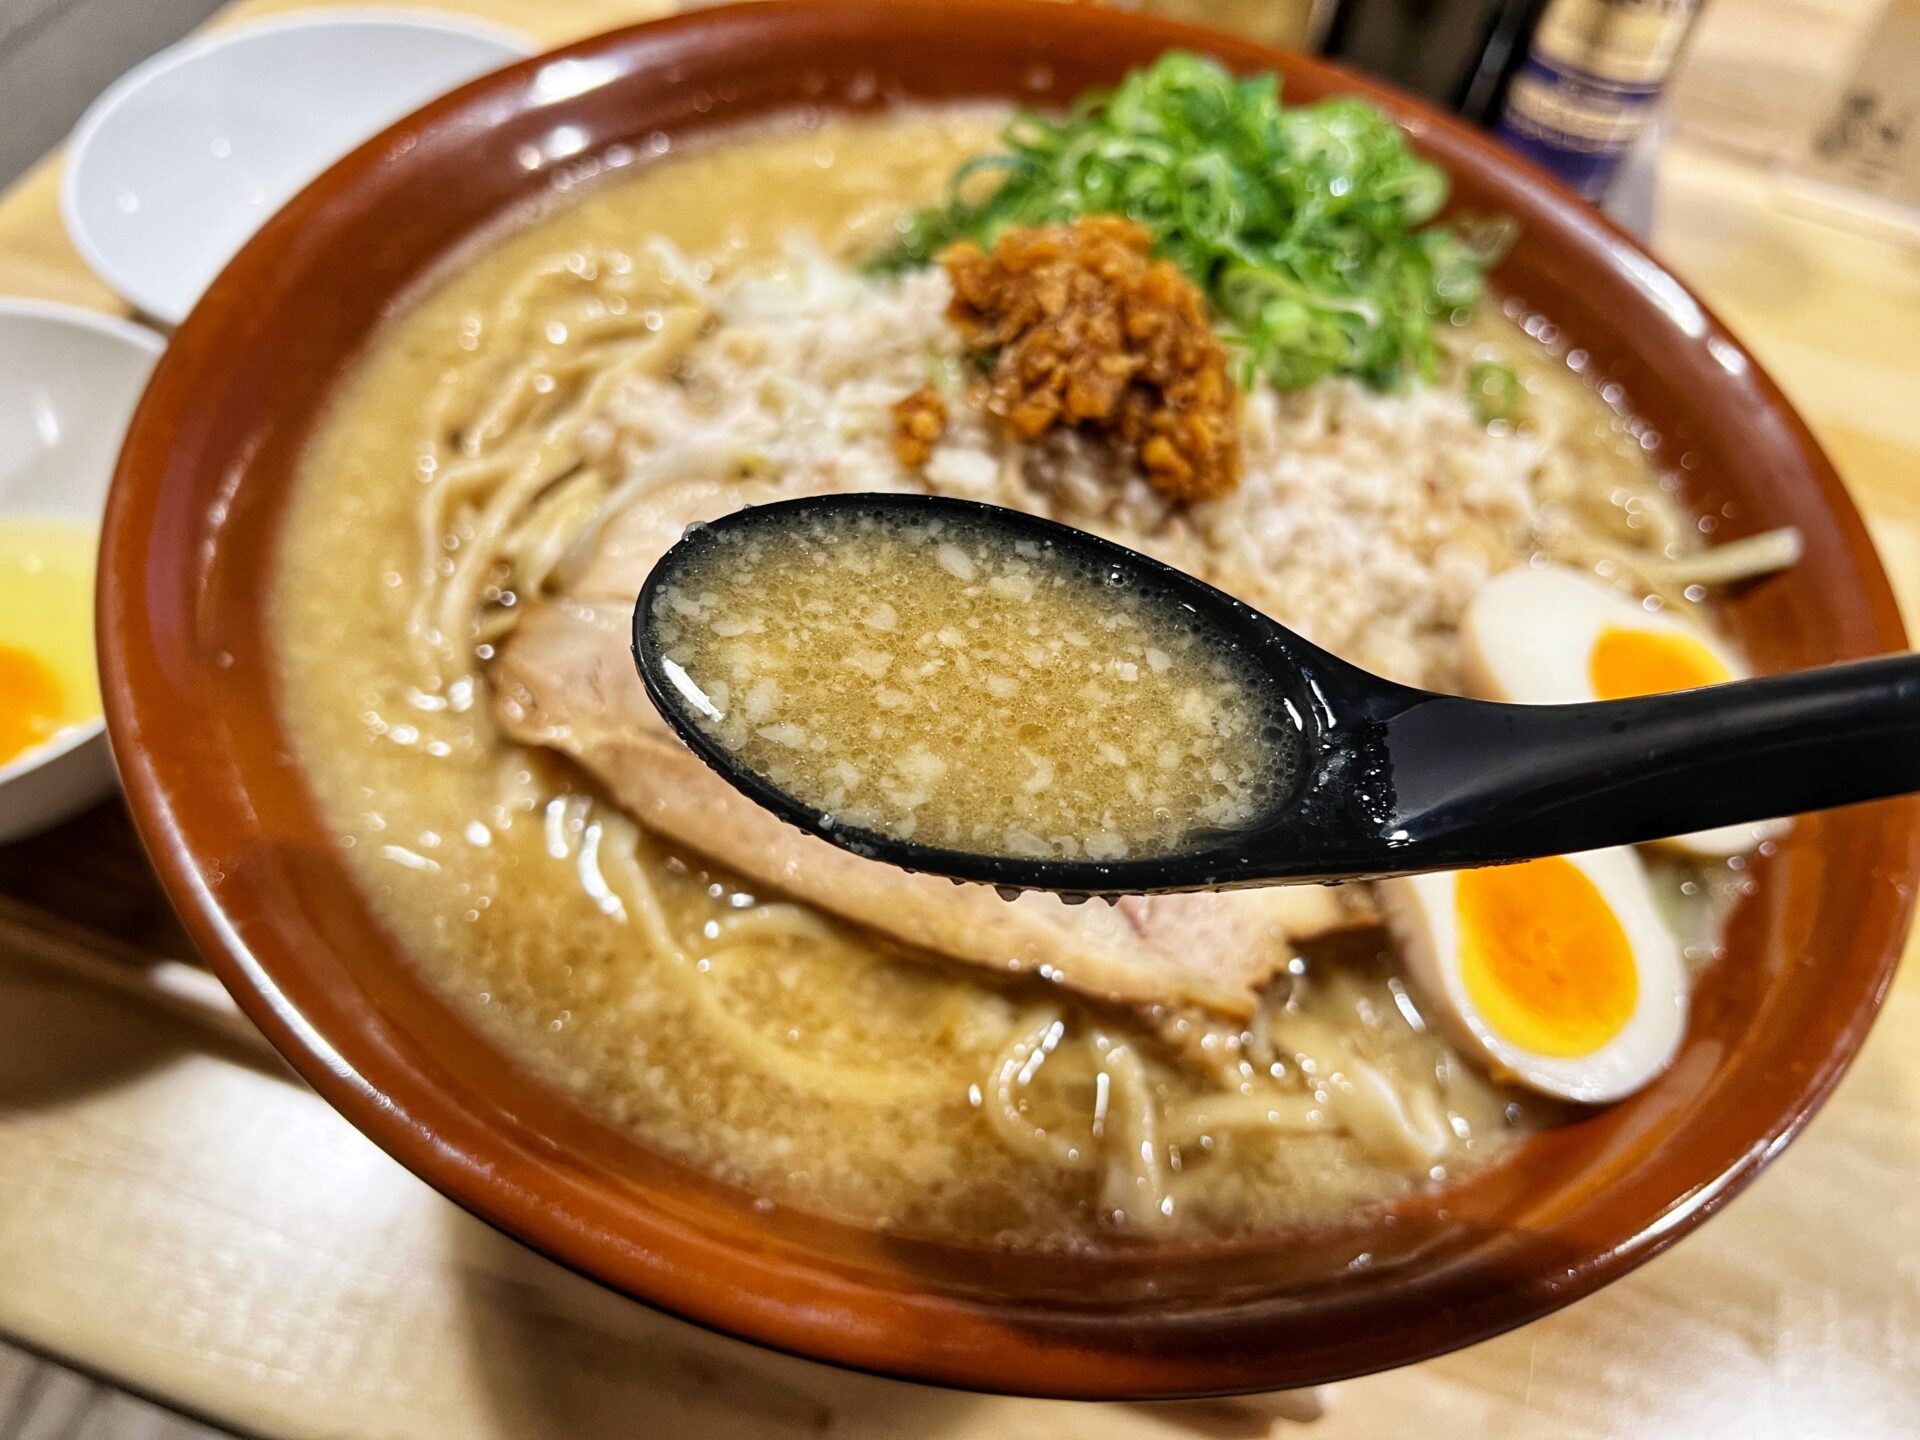 熊谷市「KUMAGAYA RAMEN STAND」二郎系の豚ラーメンをすり鉢実食！特盛に大盛り追加可能です